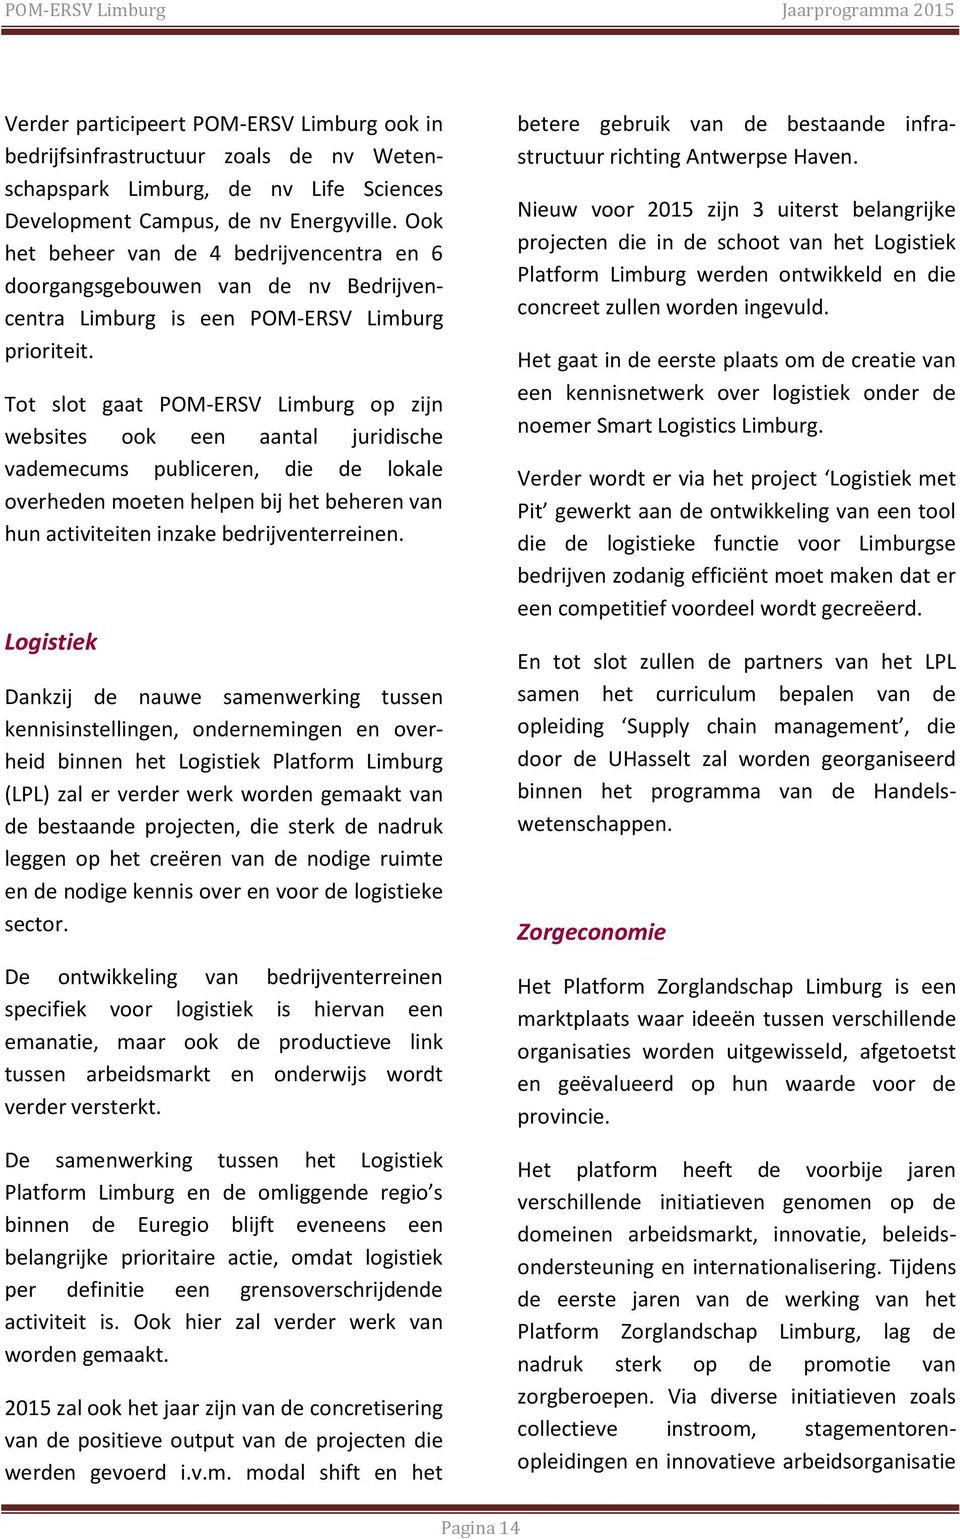 Tot slot gaat POM-ERSV Limburg op zijn websites ook een aantal juridische vademecums publiceren, die de lokale overheden moeten helpen bij het beheren van hun activiteiten inzake bedrijventerreinen.